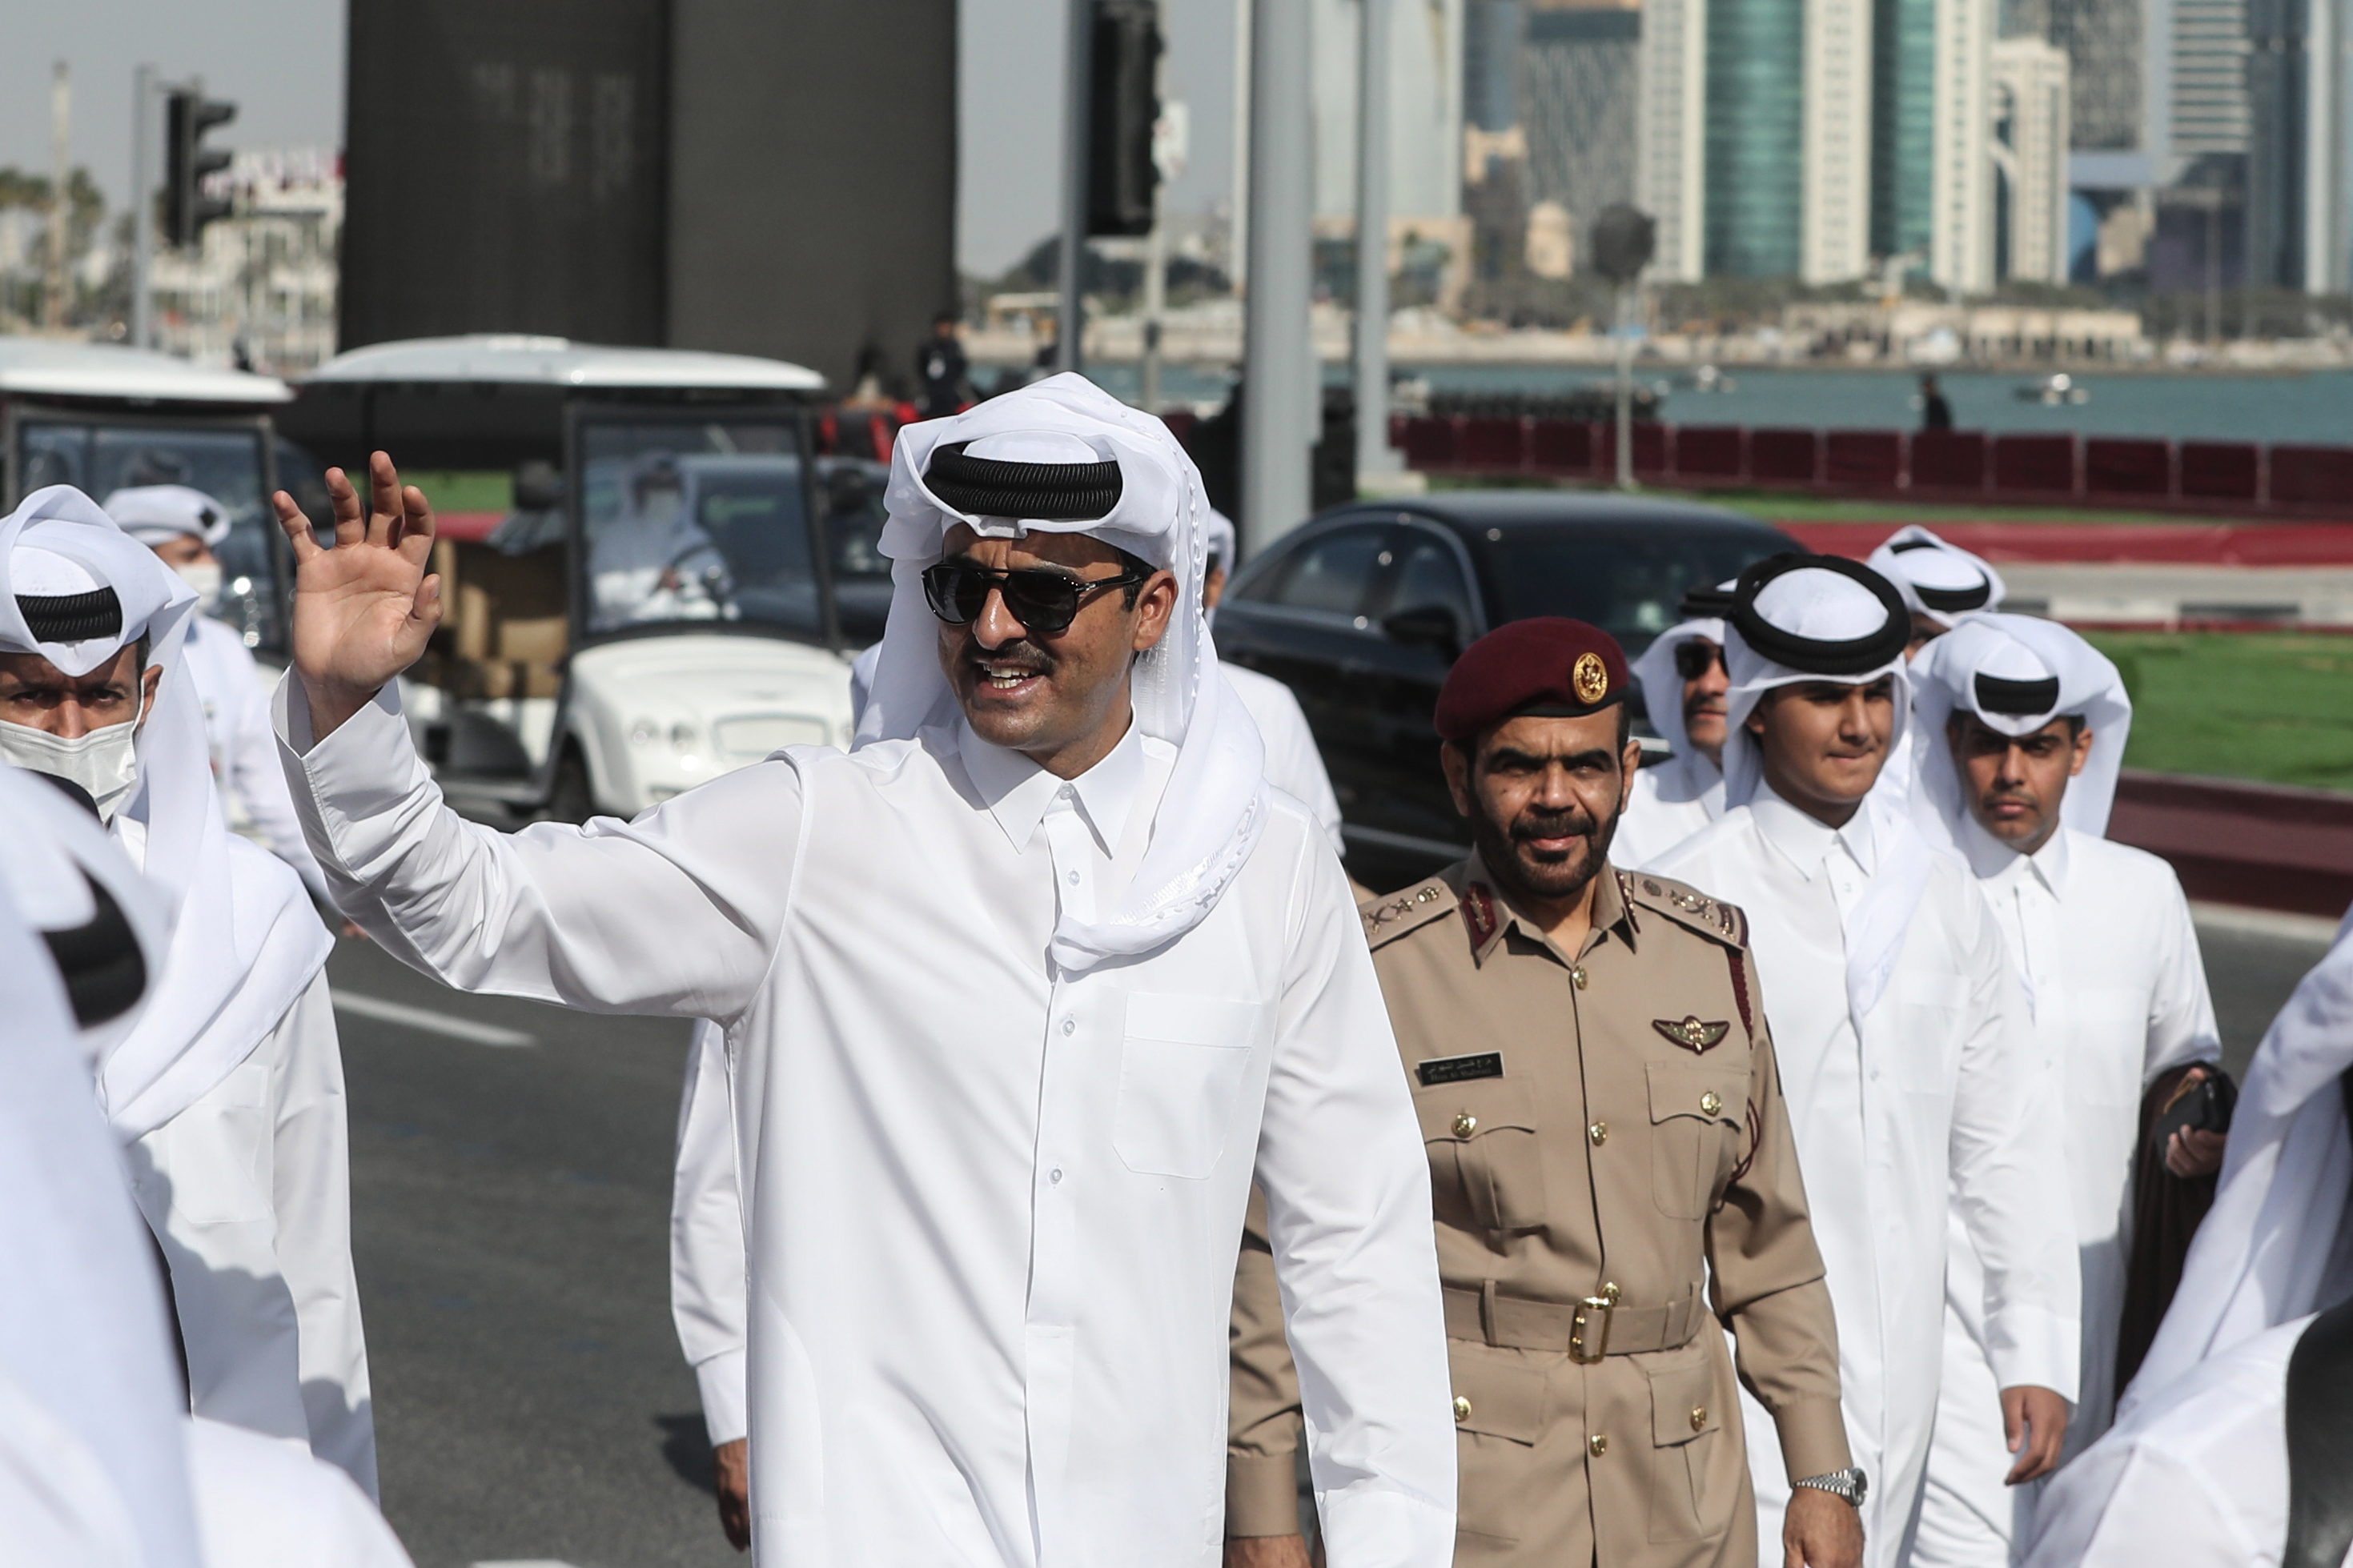 أمير قطر تميم بن حمد آل ثاني (C) يصل لحضور عرض عسكري للاحتفال باليوم الوطني القطري(دب أ)